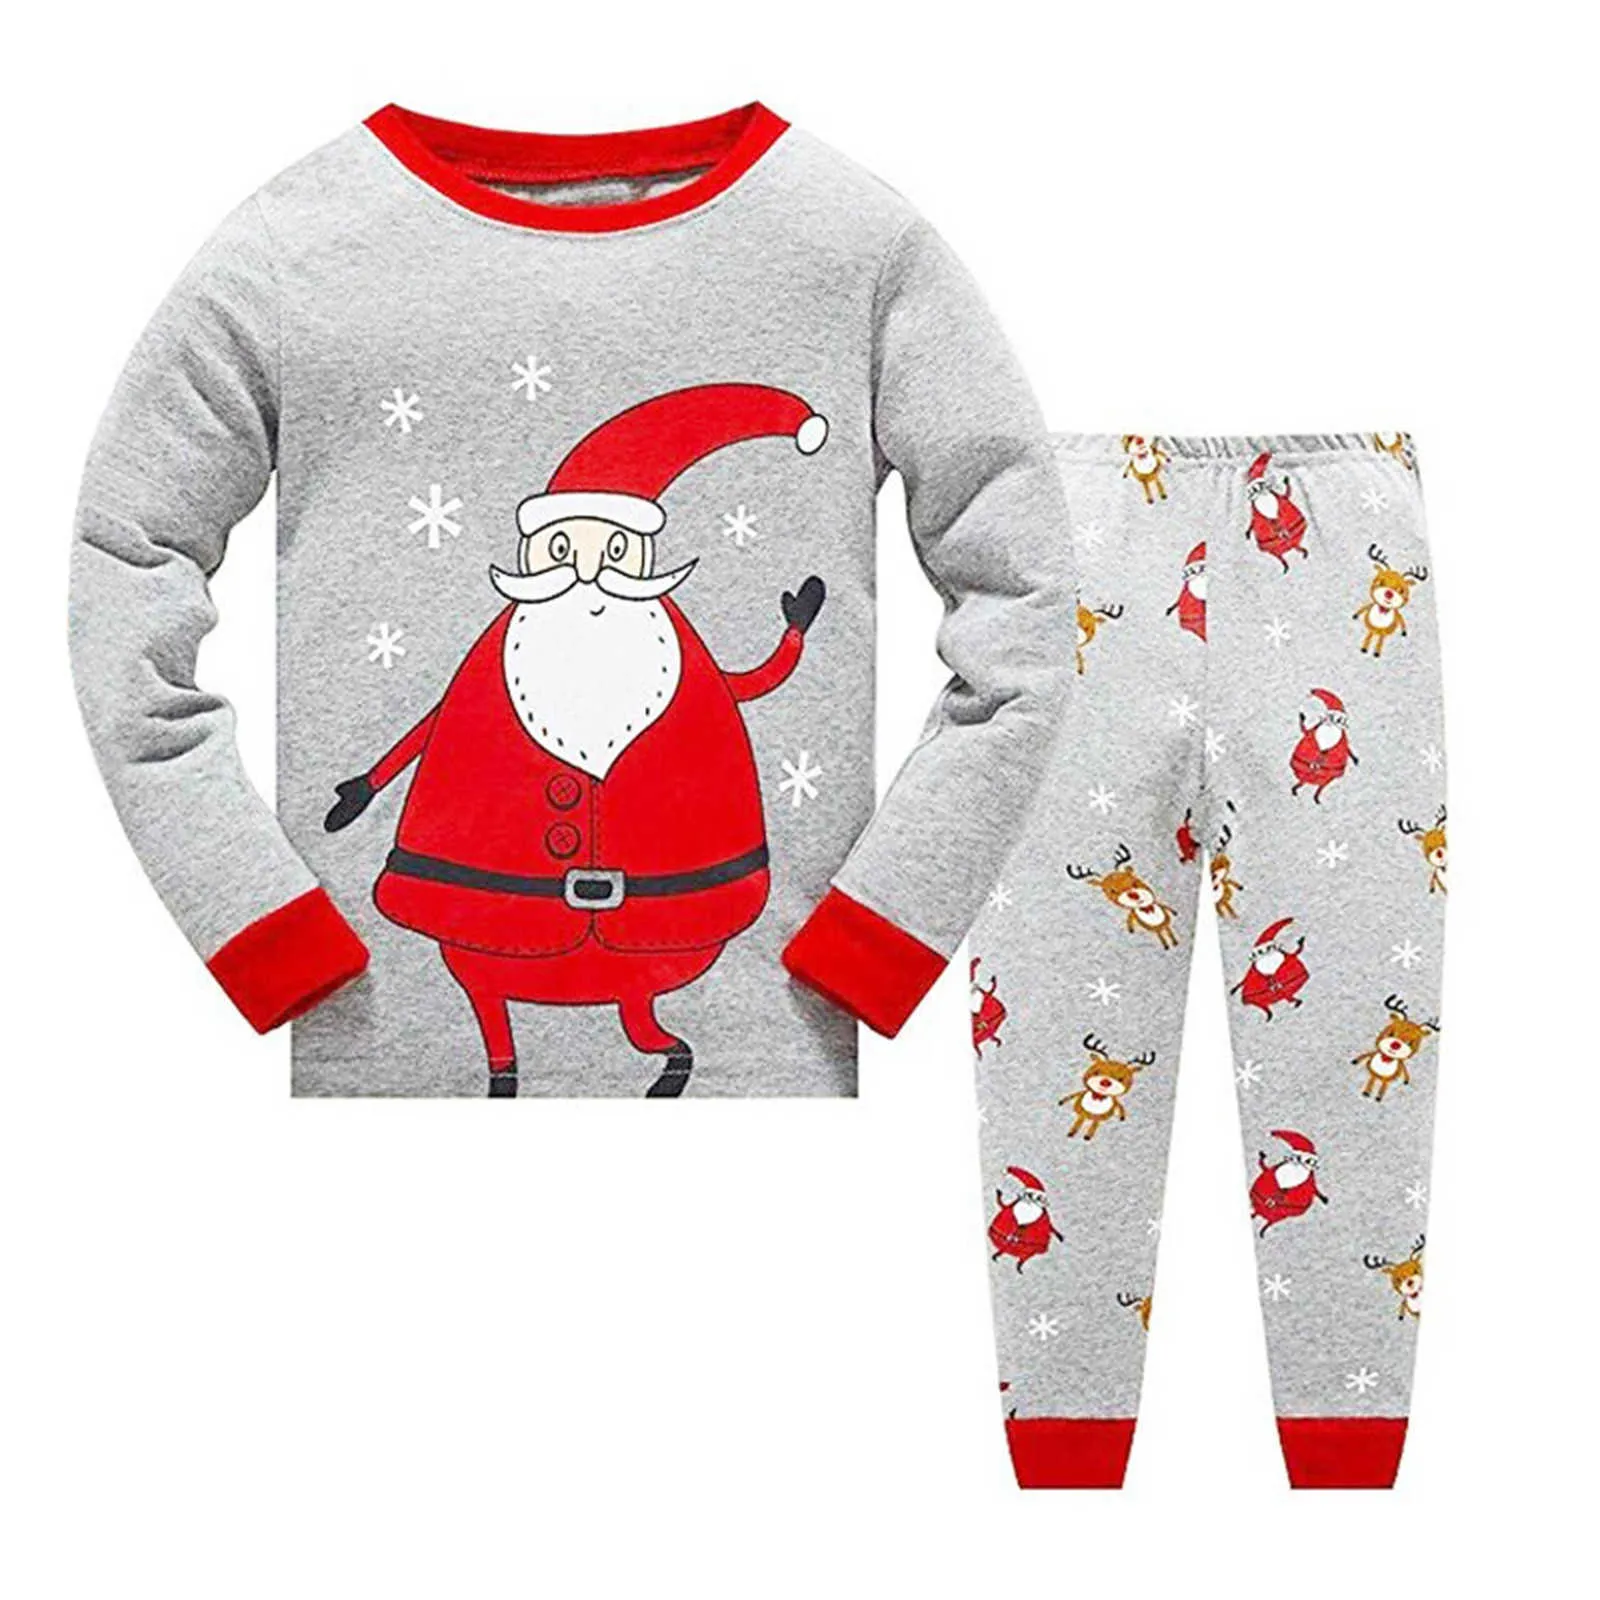 Nouveaux Enfants De Noël Pyjamas Enfants Père Noël Vêtements De Nuit Bébé Animal Pyjamas Garçons Filles Vêtements De Nuit Chilld Pijamas Ensembles 2021 Vente G1023